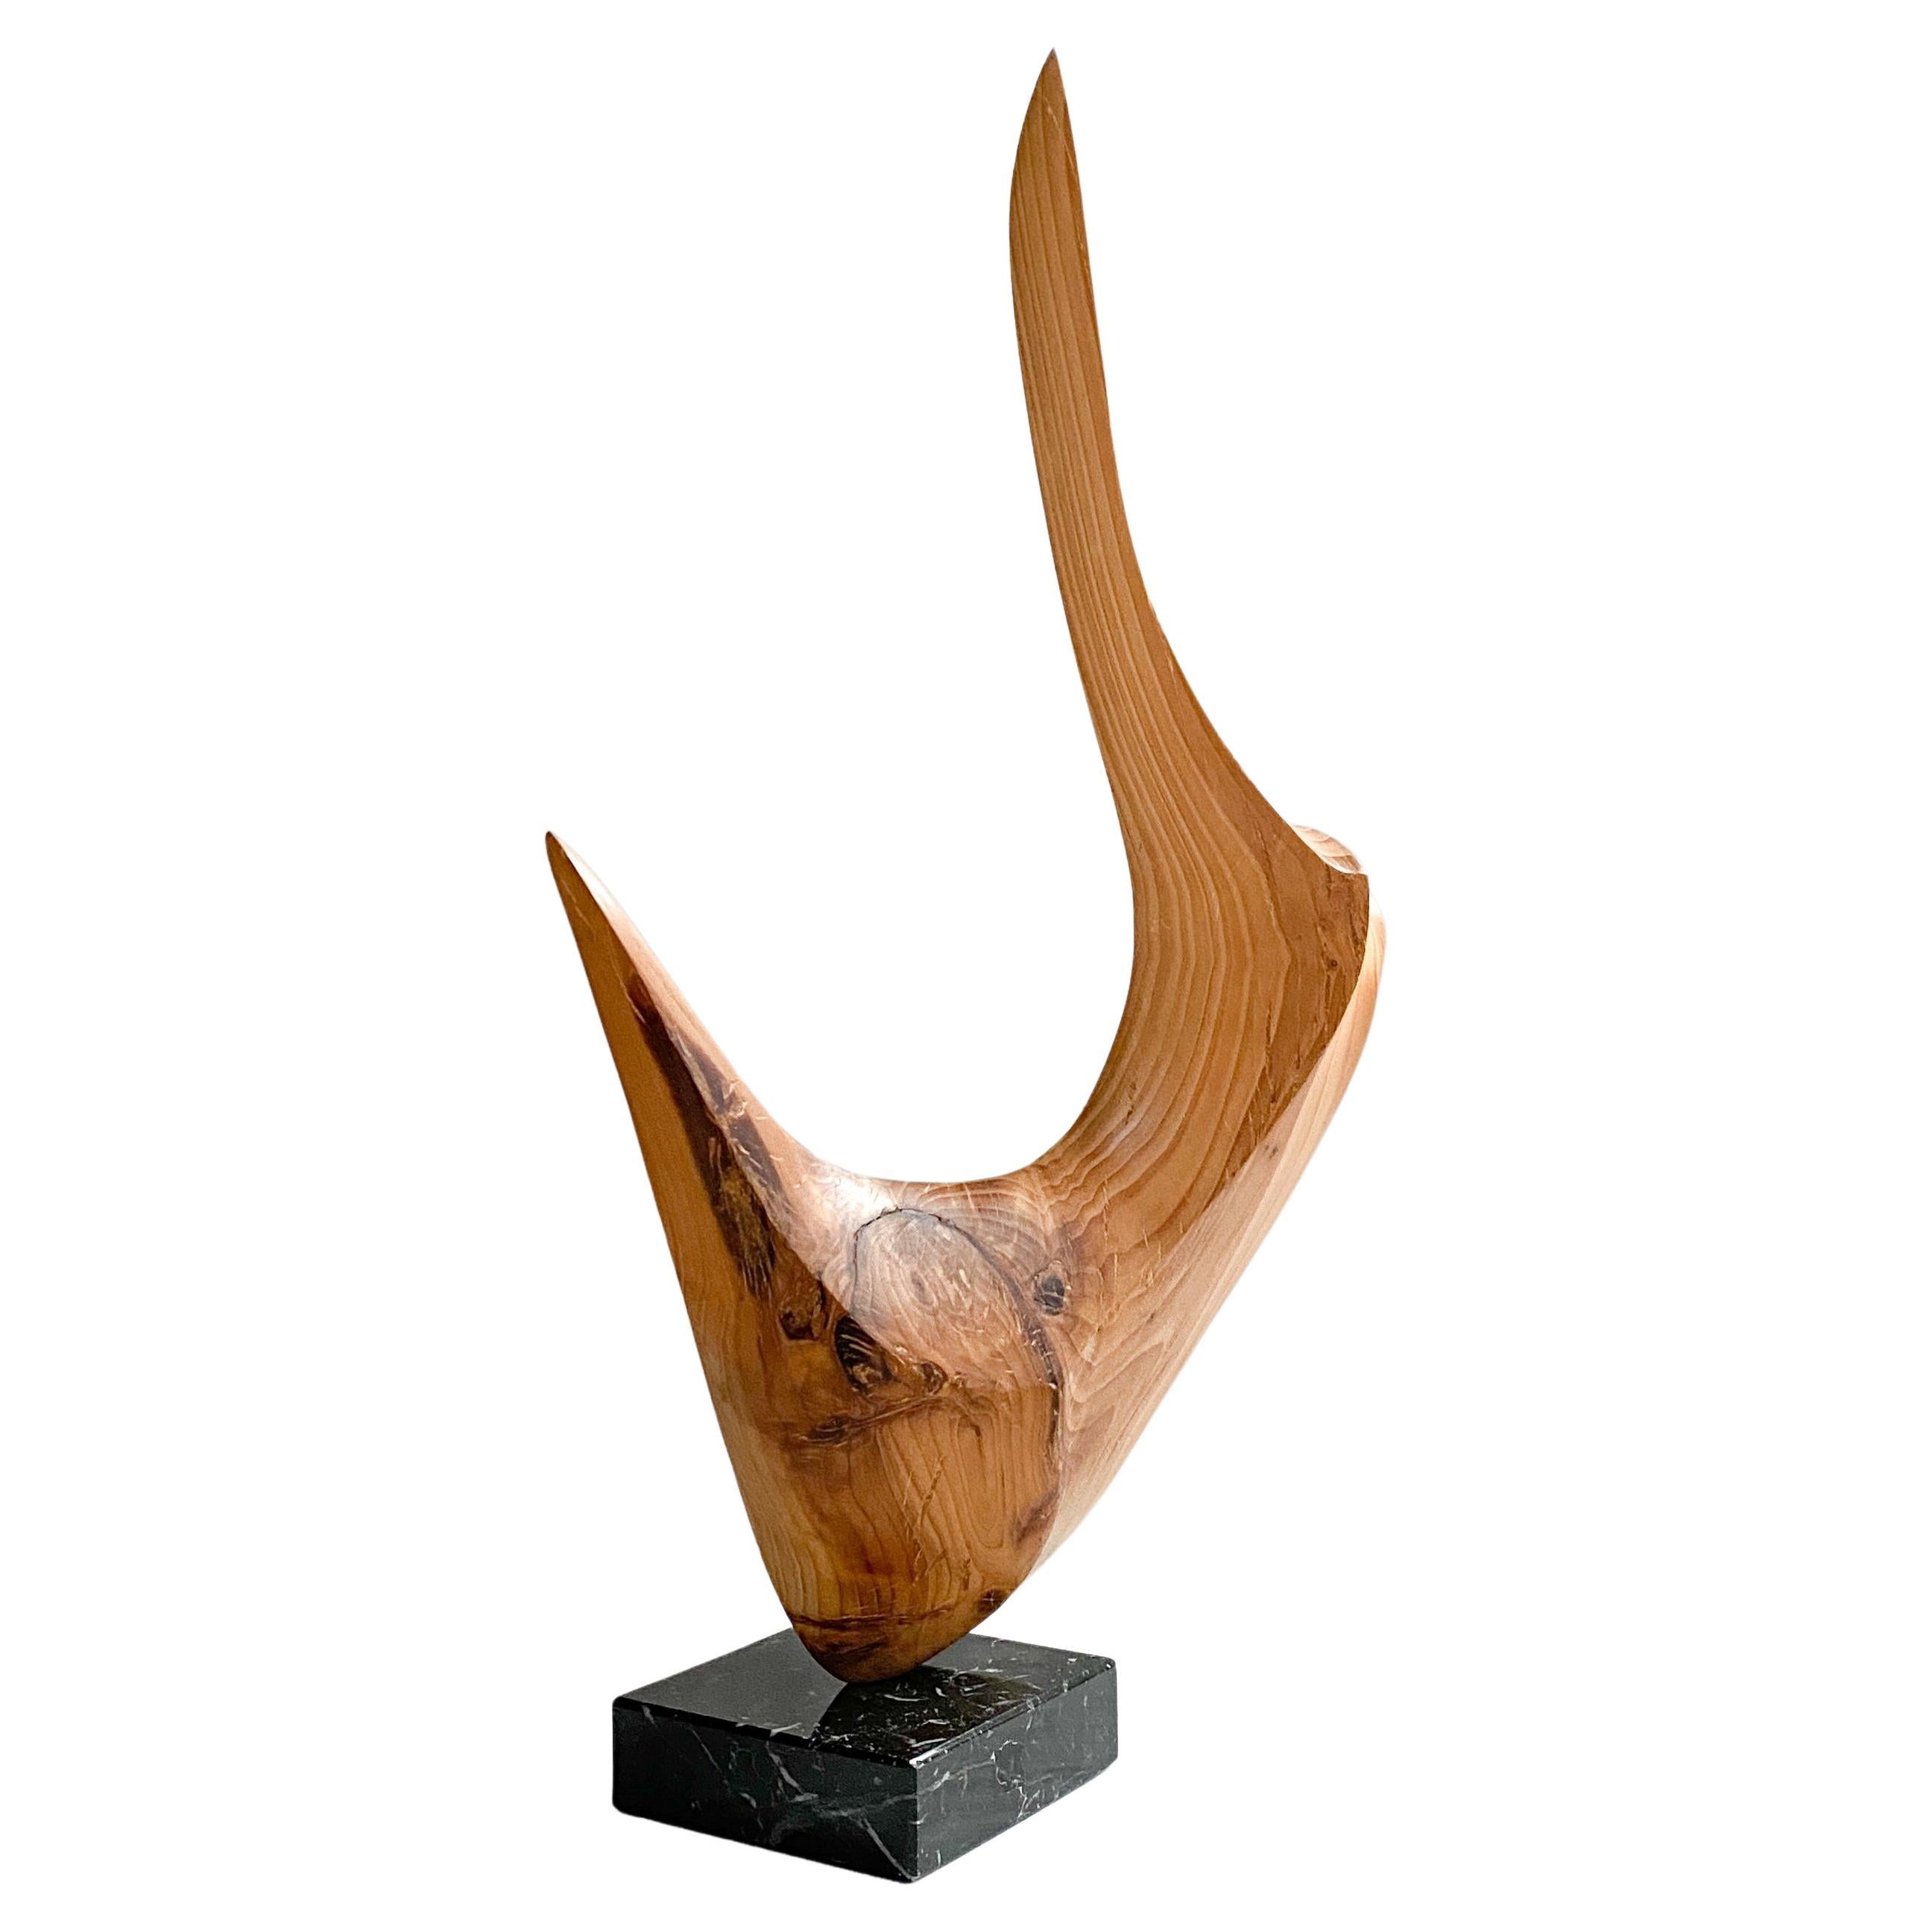 Sculpture en bois moderniste abstraite de forme libre, sculptée à la main, années 1970